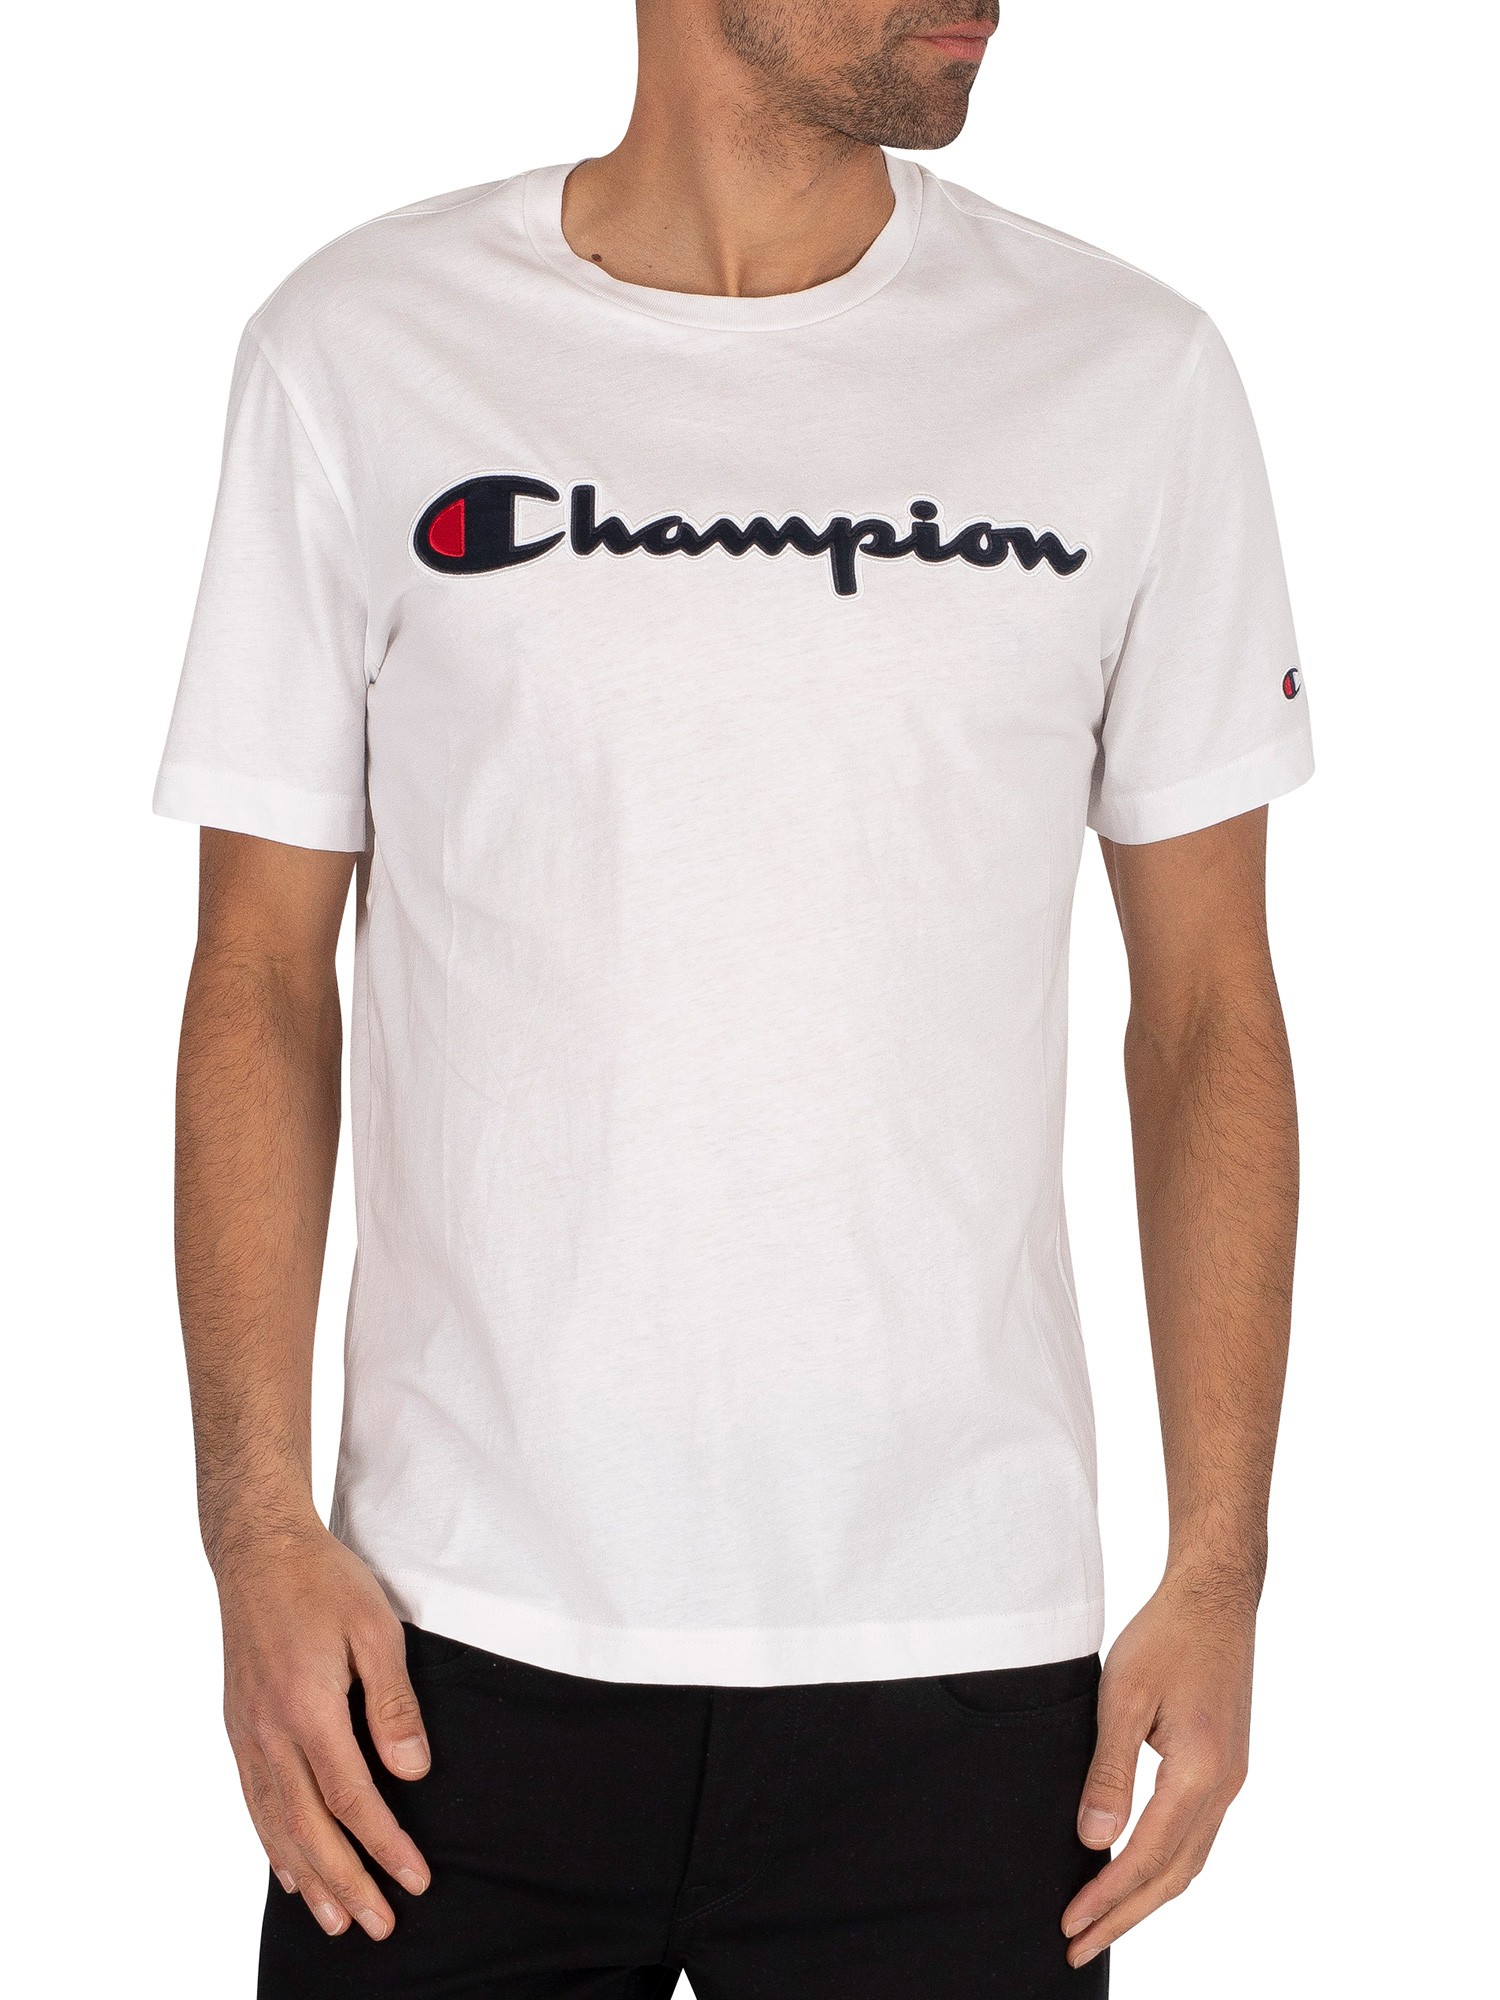 champion t shirt mens white